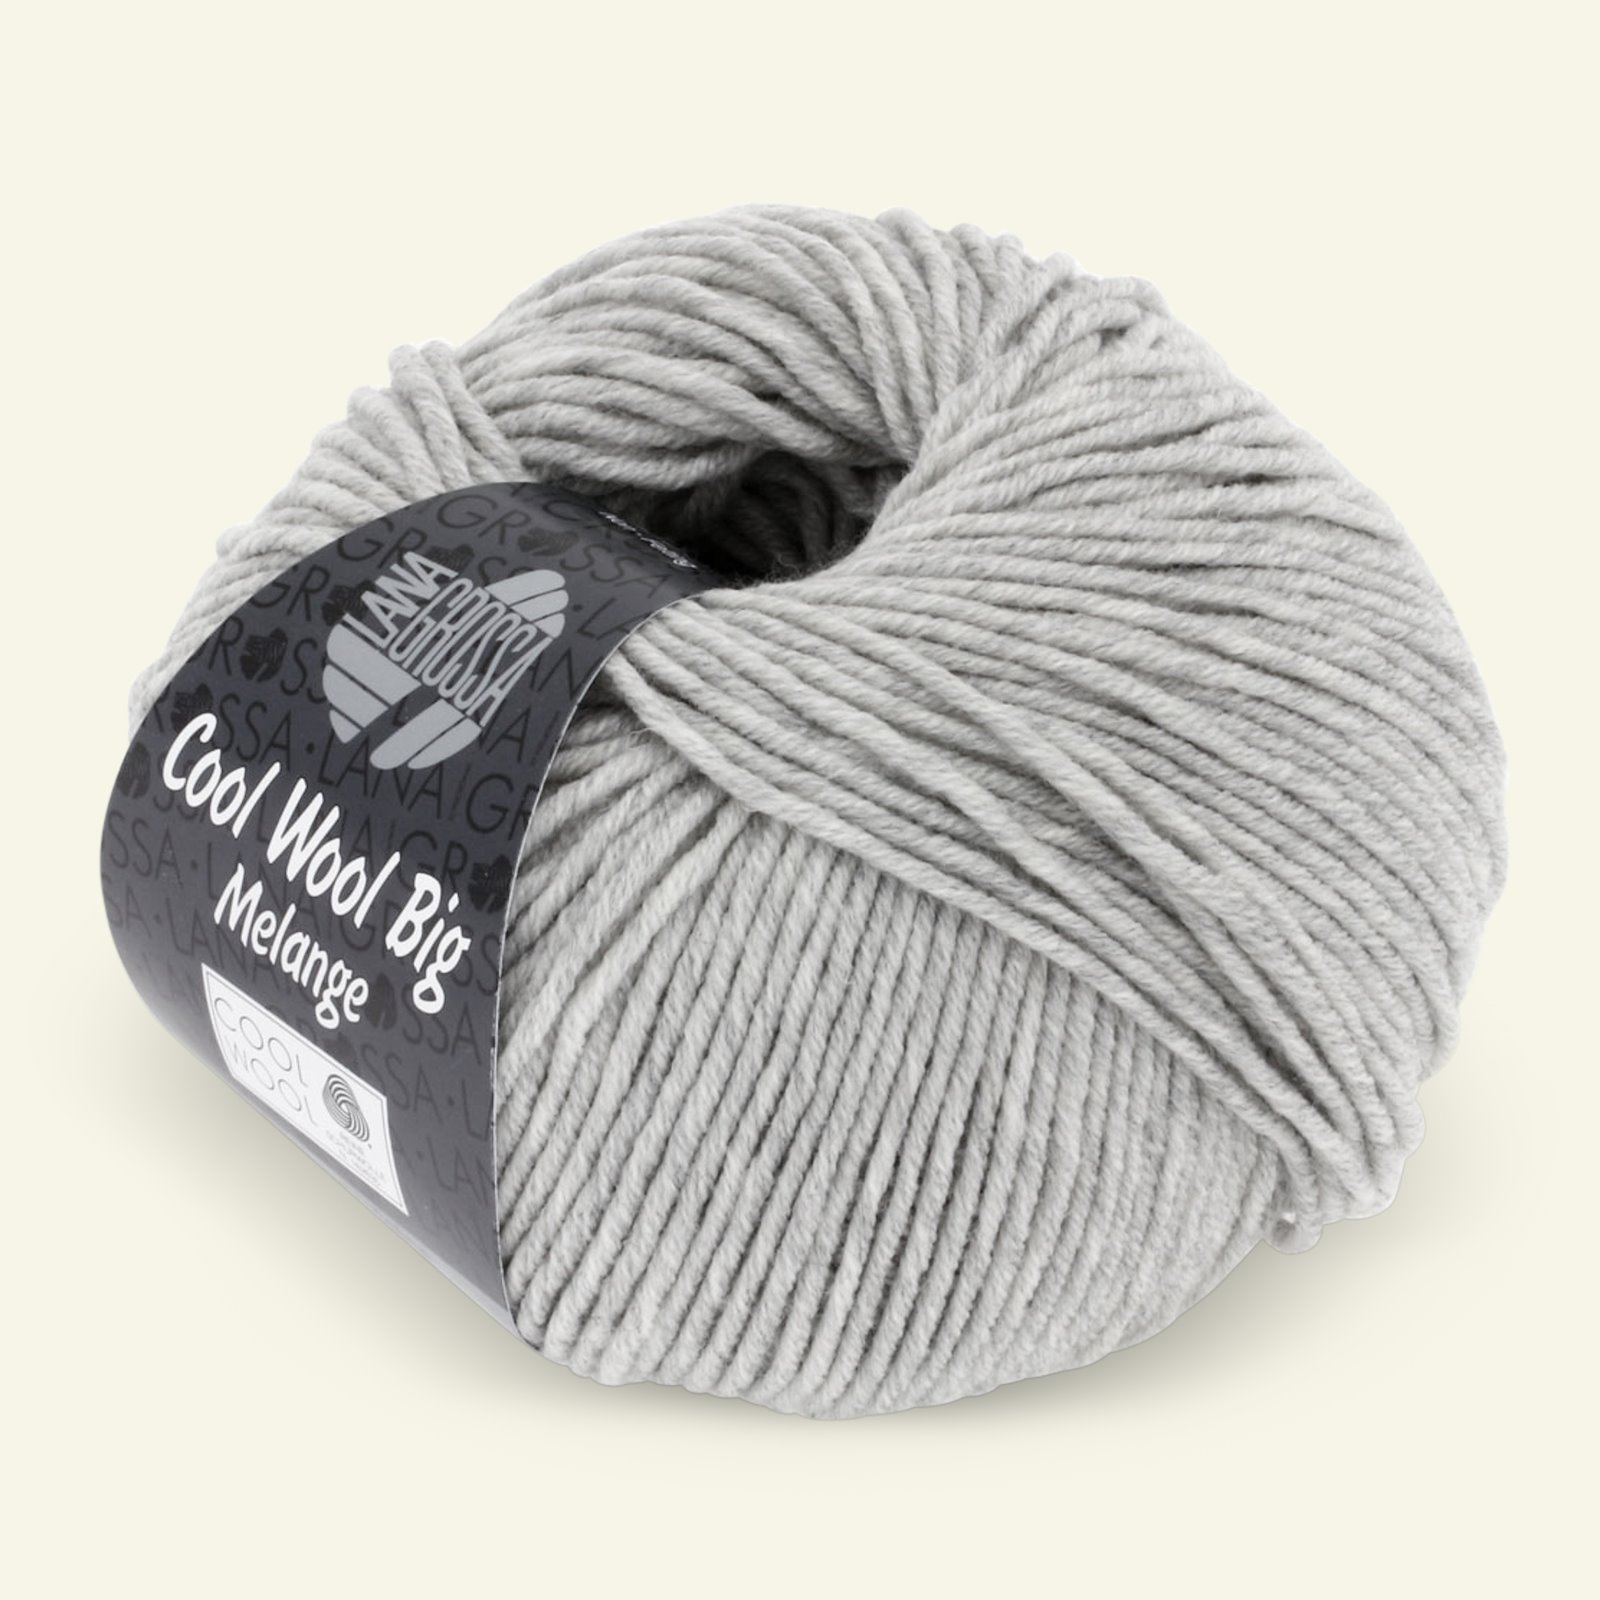 Lana Grossa, extrafine merino ullgarn "Cool Wool Big", ljusgrå mel. 90001085_pack